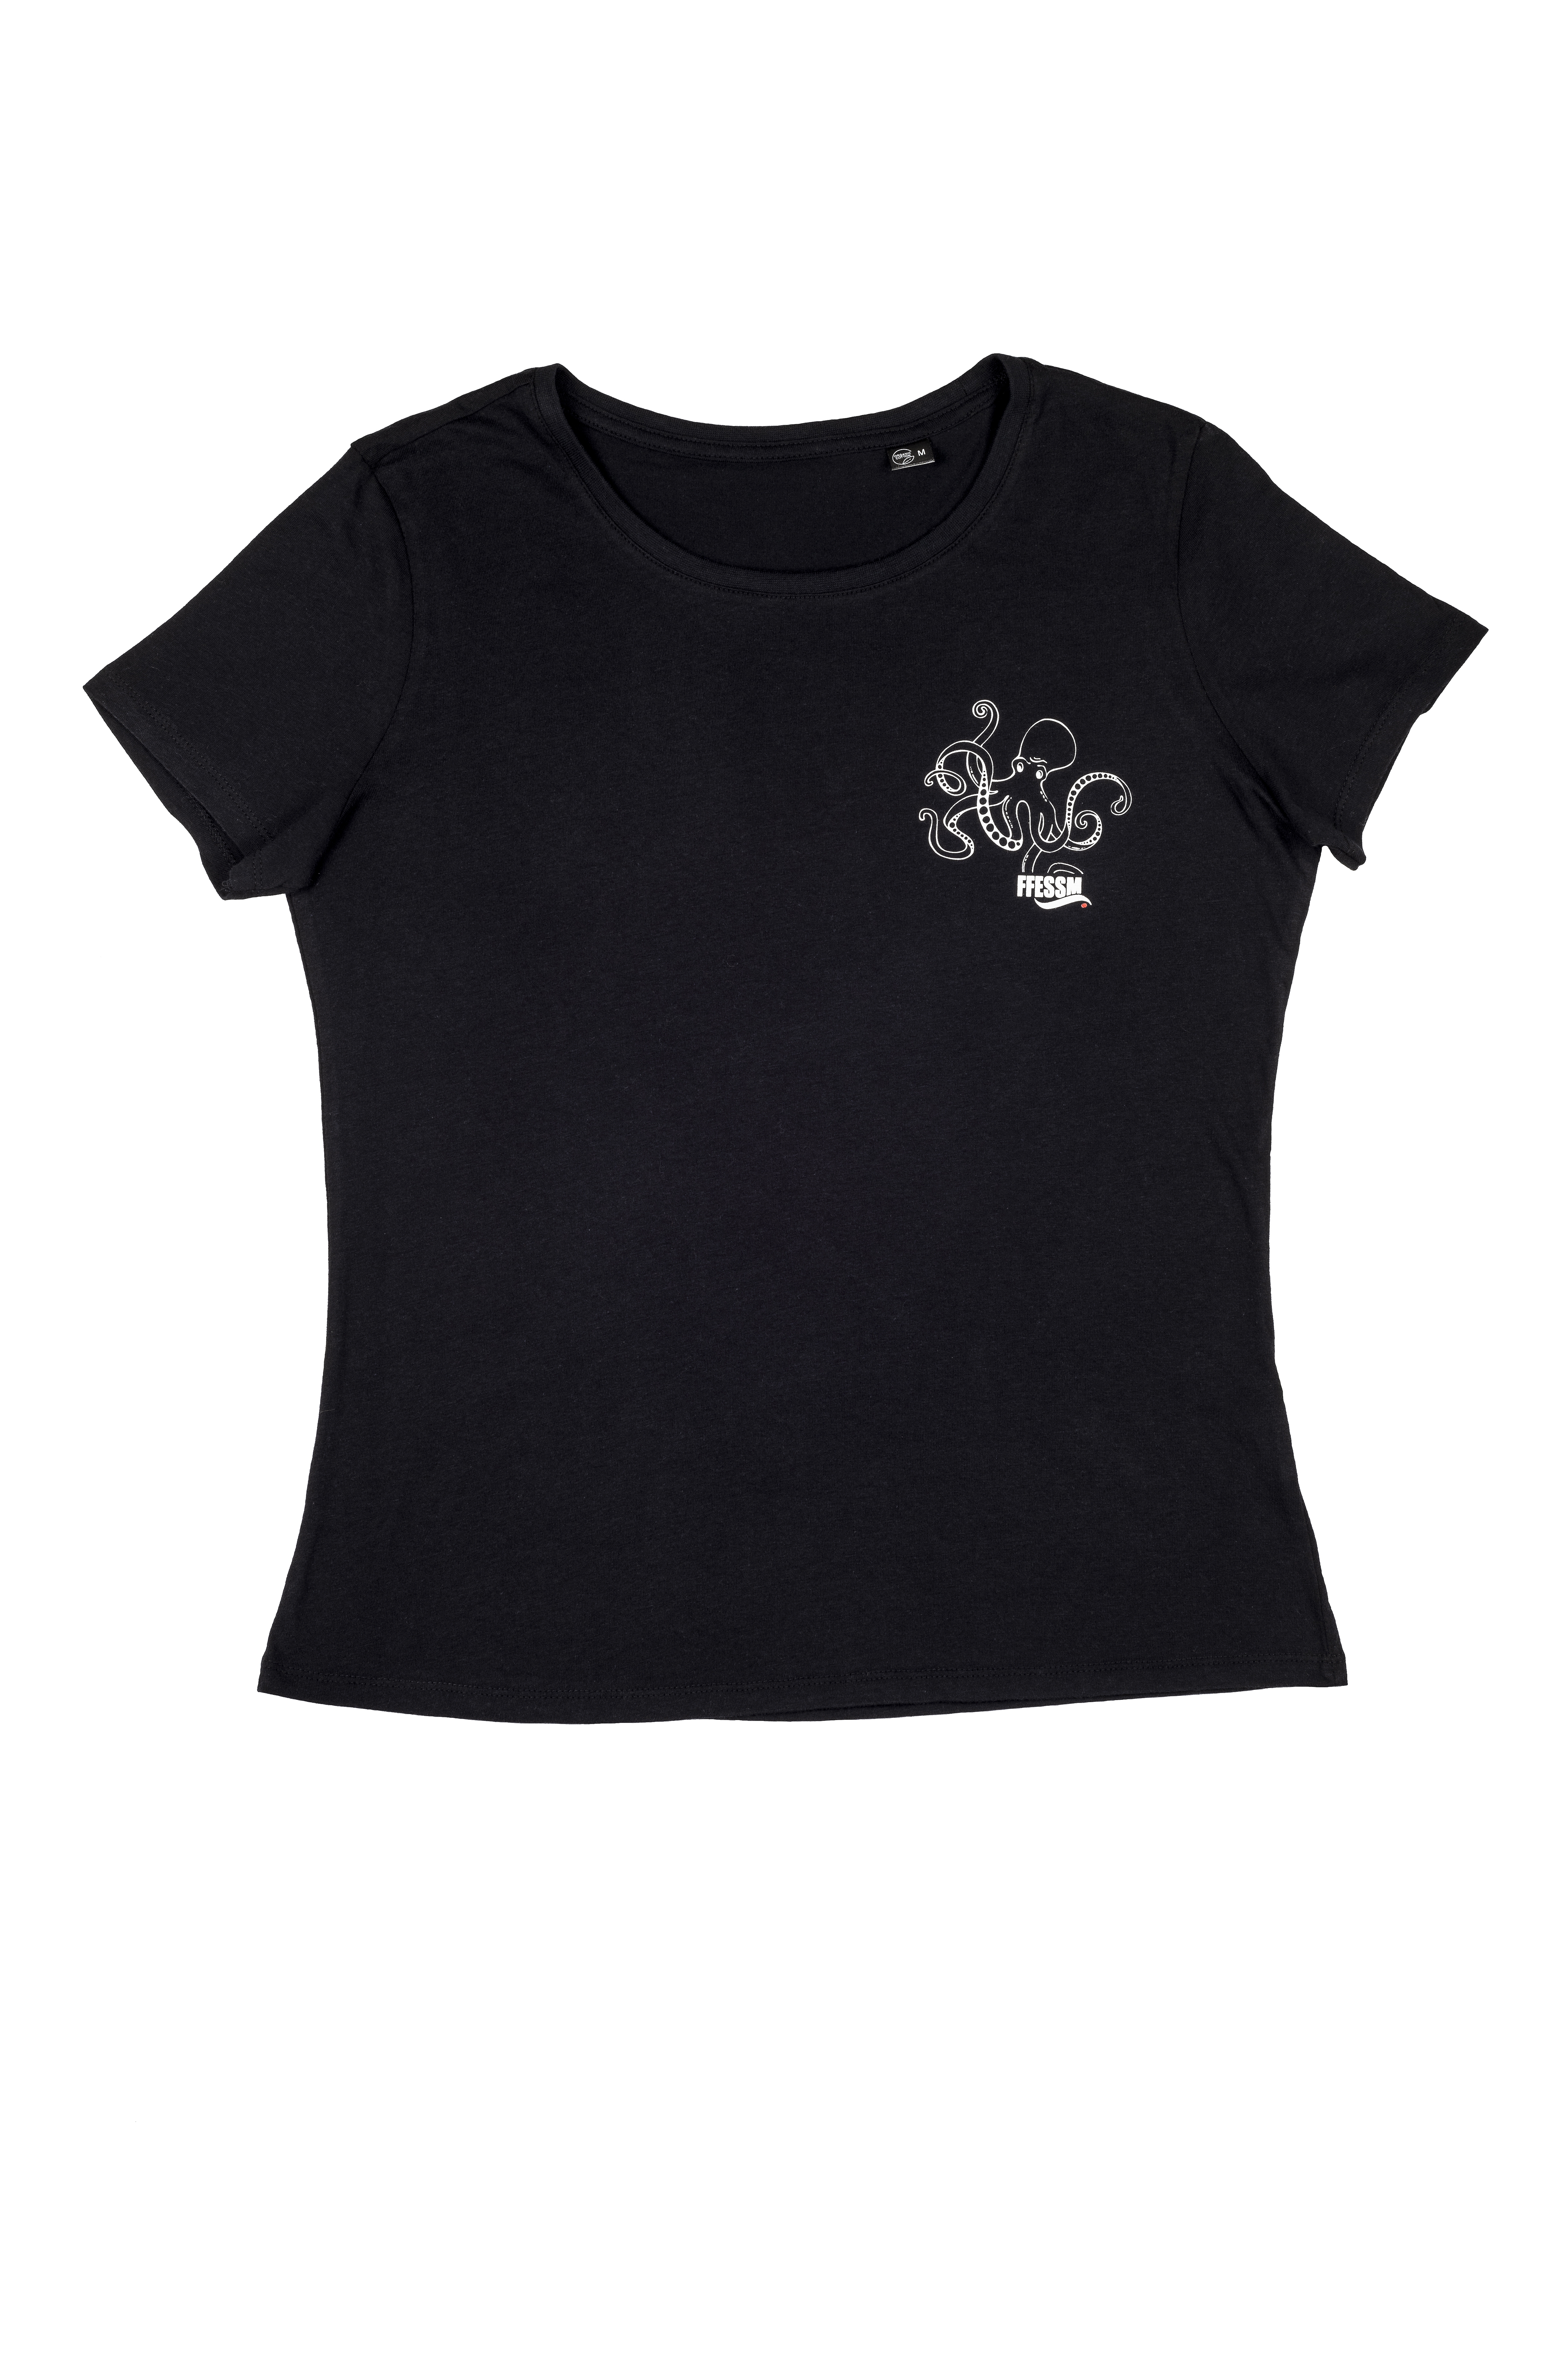 T-shirt femme éco-responsable - le poulpe - Noir